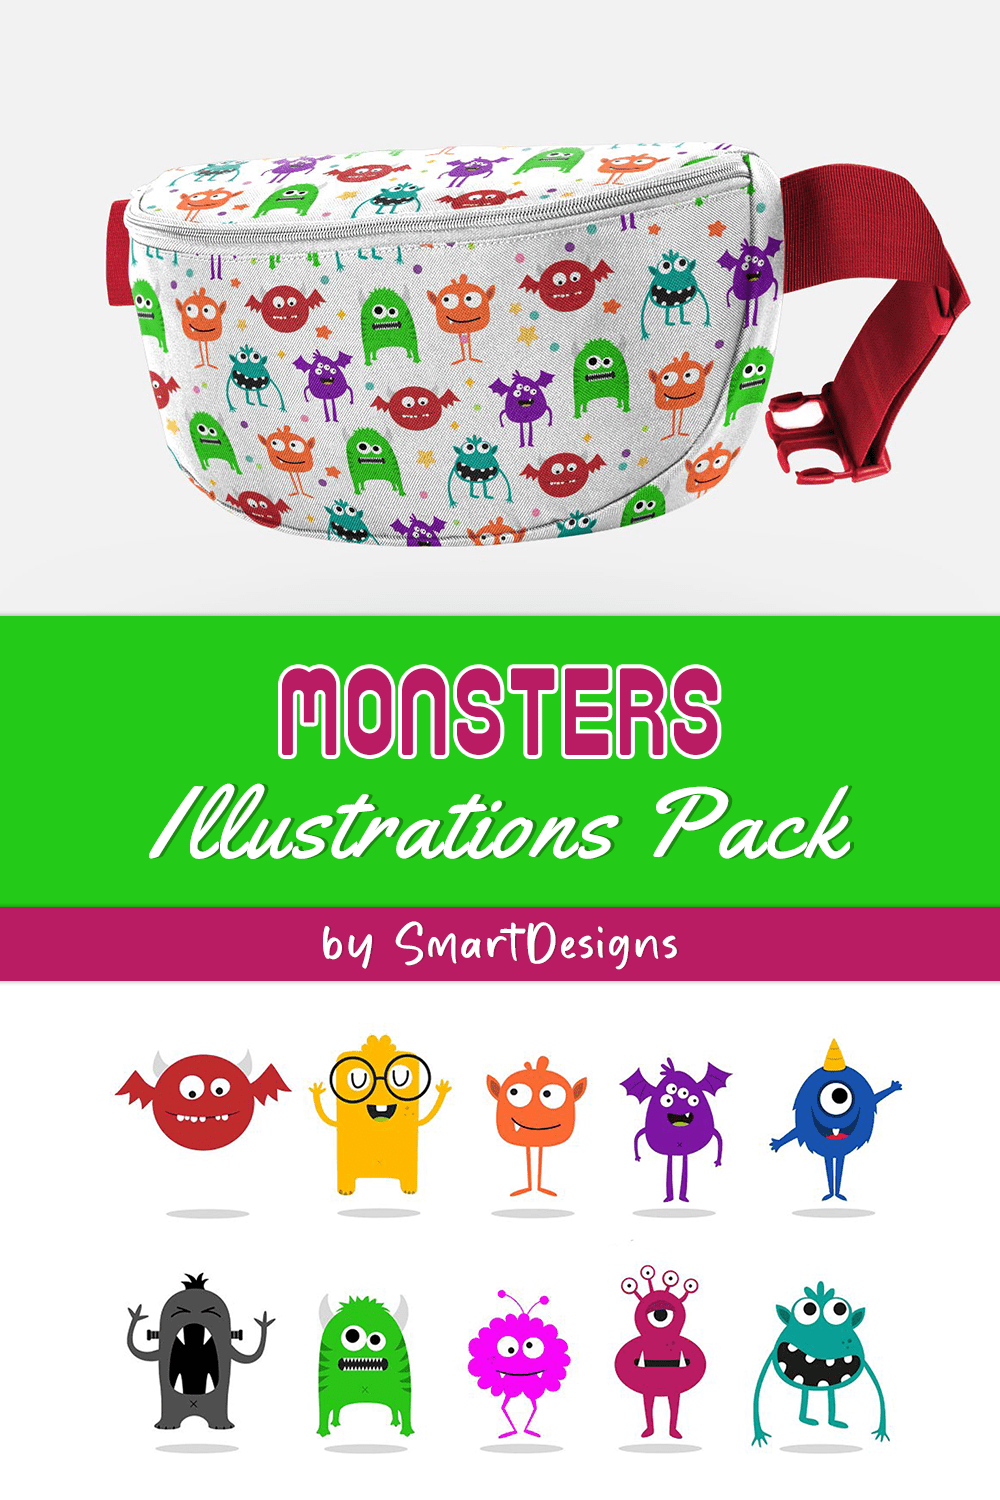 Monsters illustrations pack of pinterest.